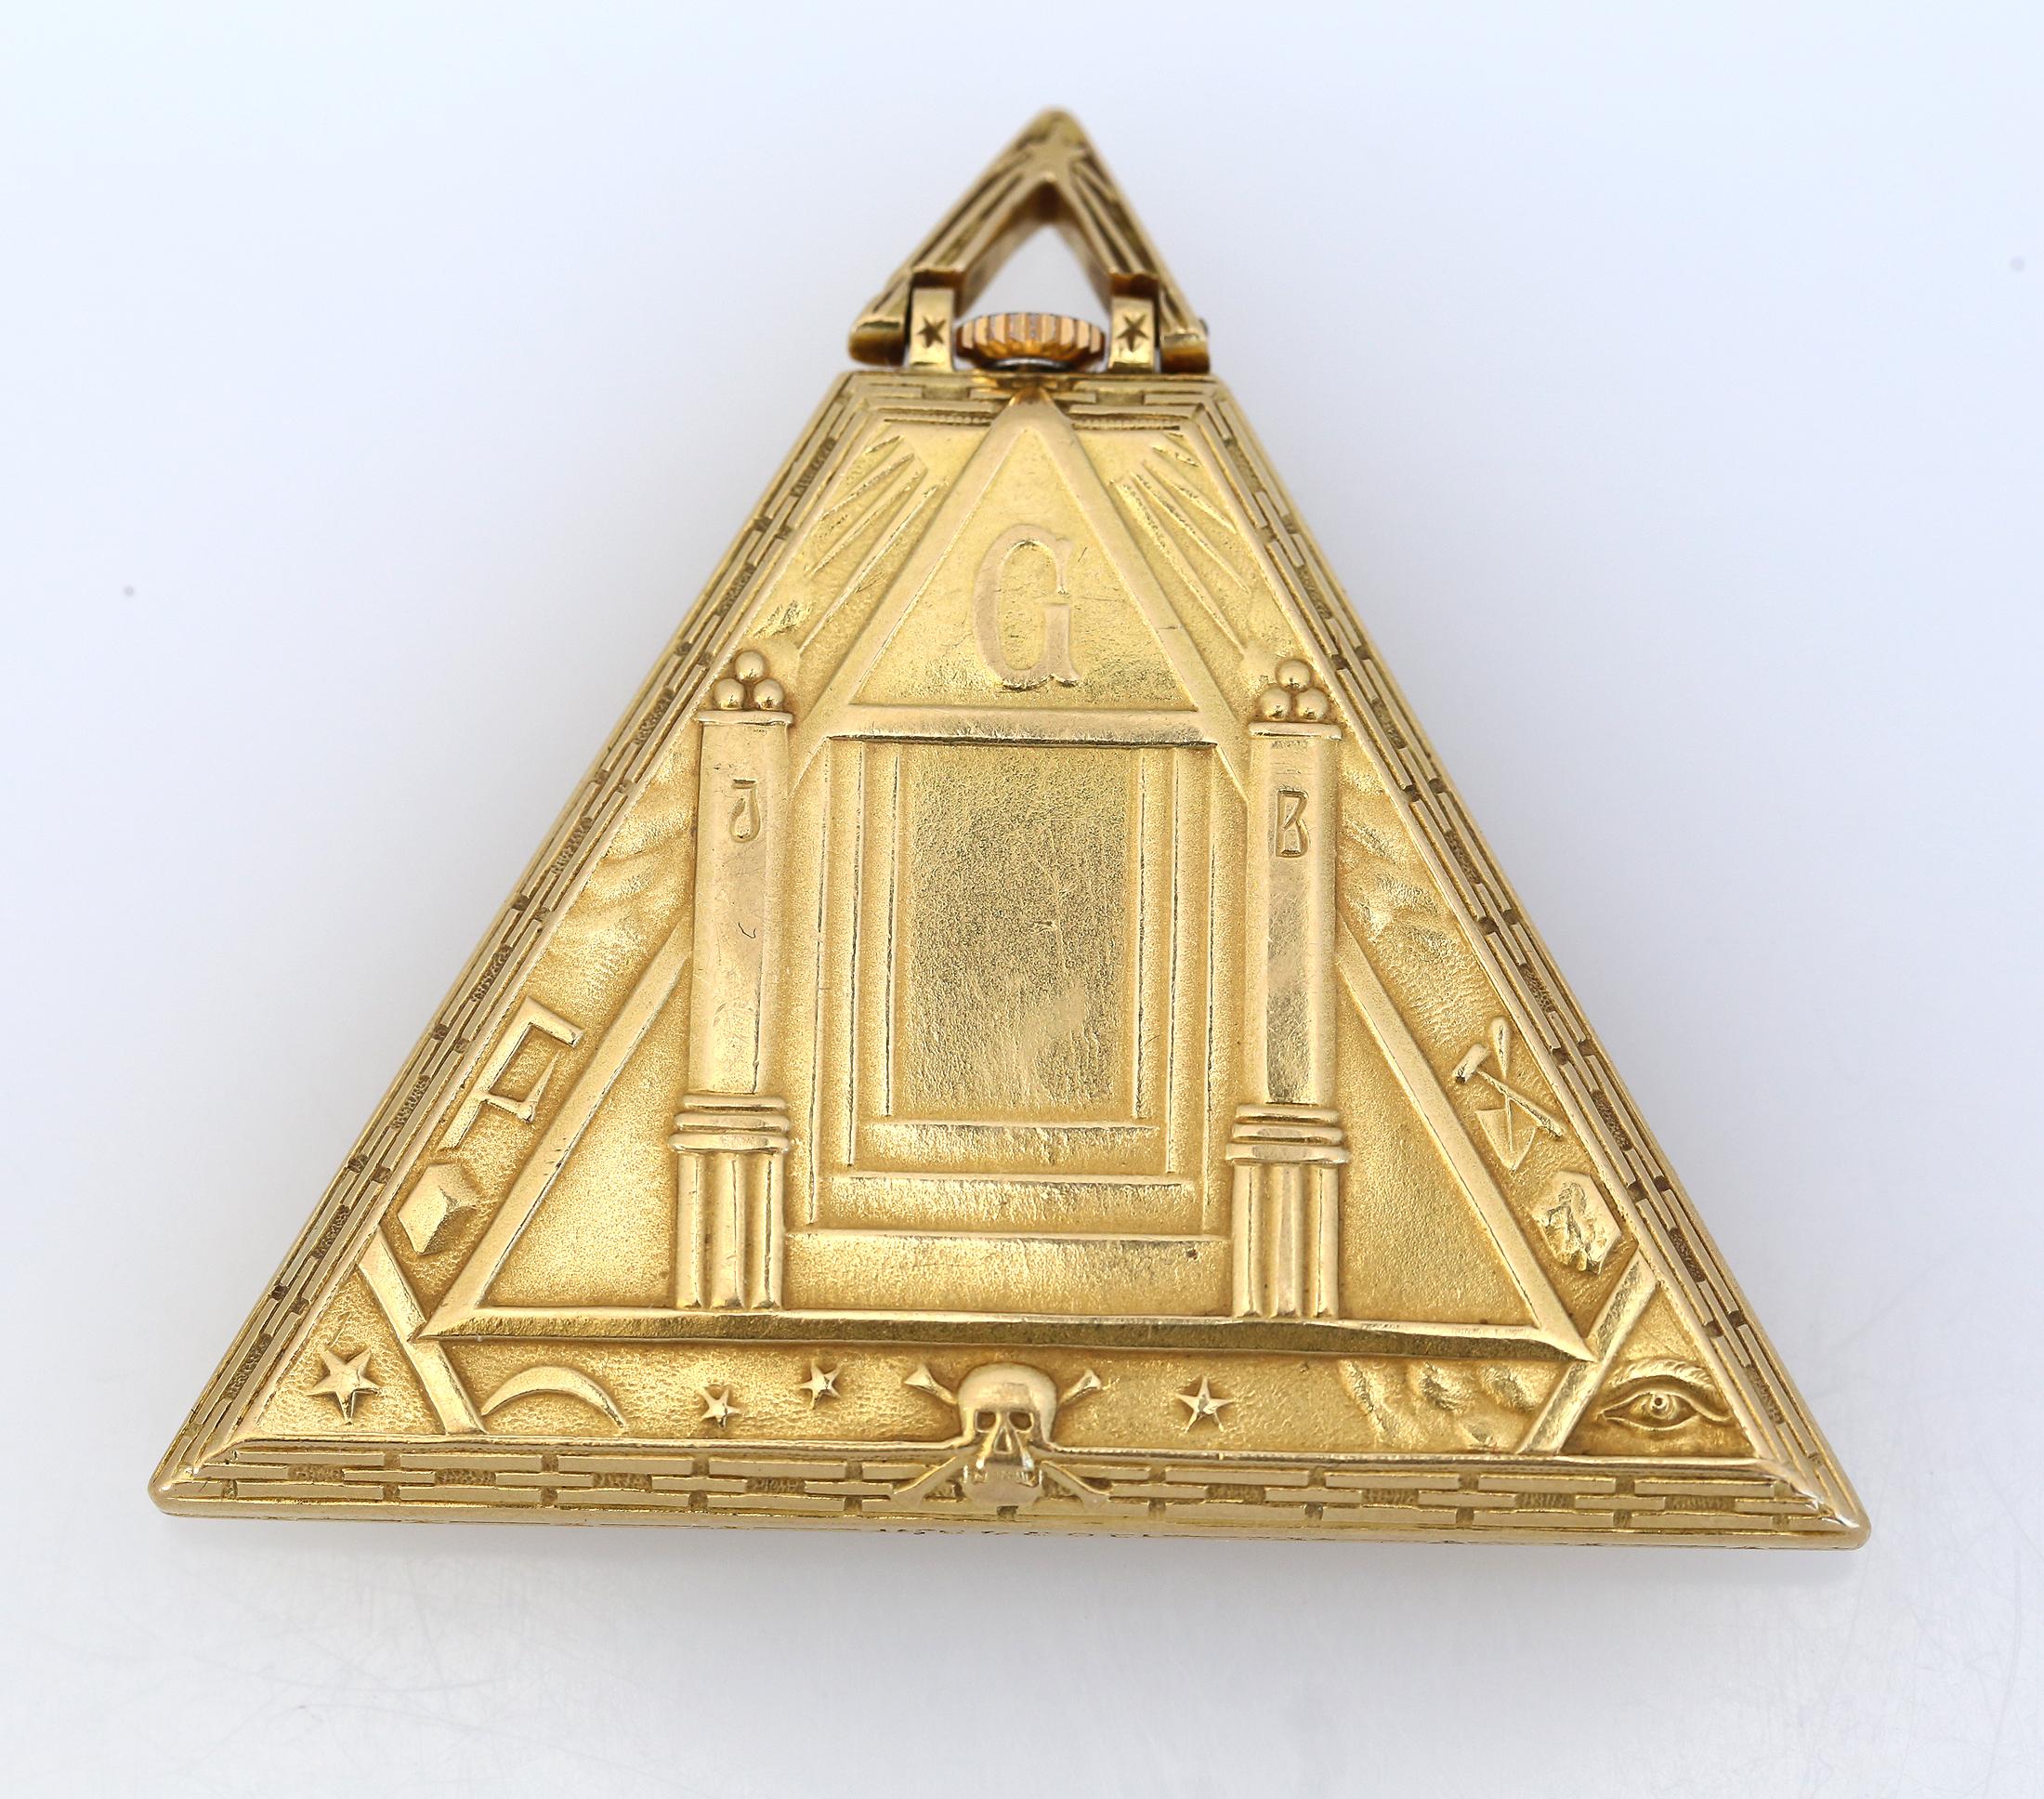 Art Deco Masoniс Dreieck Pyramide Gold Uhr Levrette Schweizer, 1920

Extrem seltene antike Masoniс Dreieck Pyramide Gold Uhr von Levrette Swiss. Hochwertiges Sammlerstück, emailliertes Zifferblatt mit Freimaurerzeichen anstelle von Ziffern.